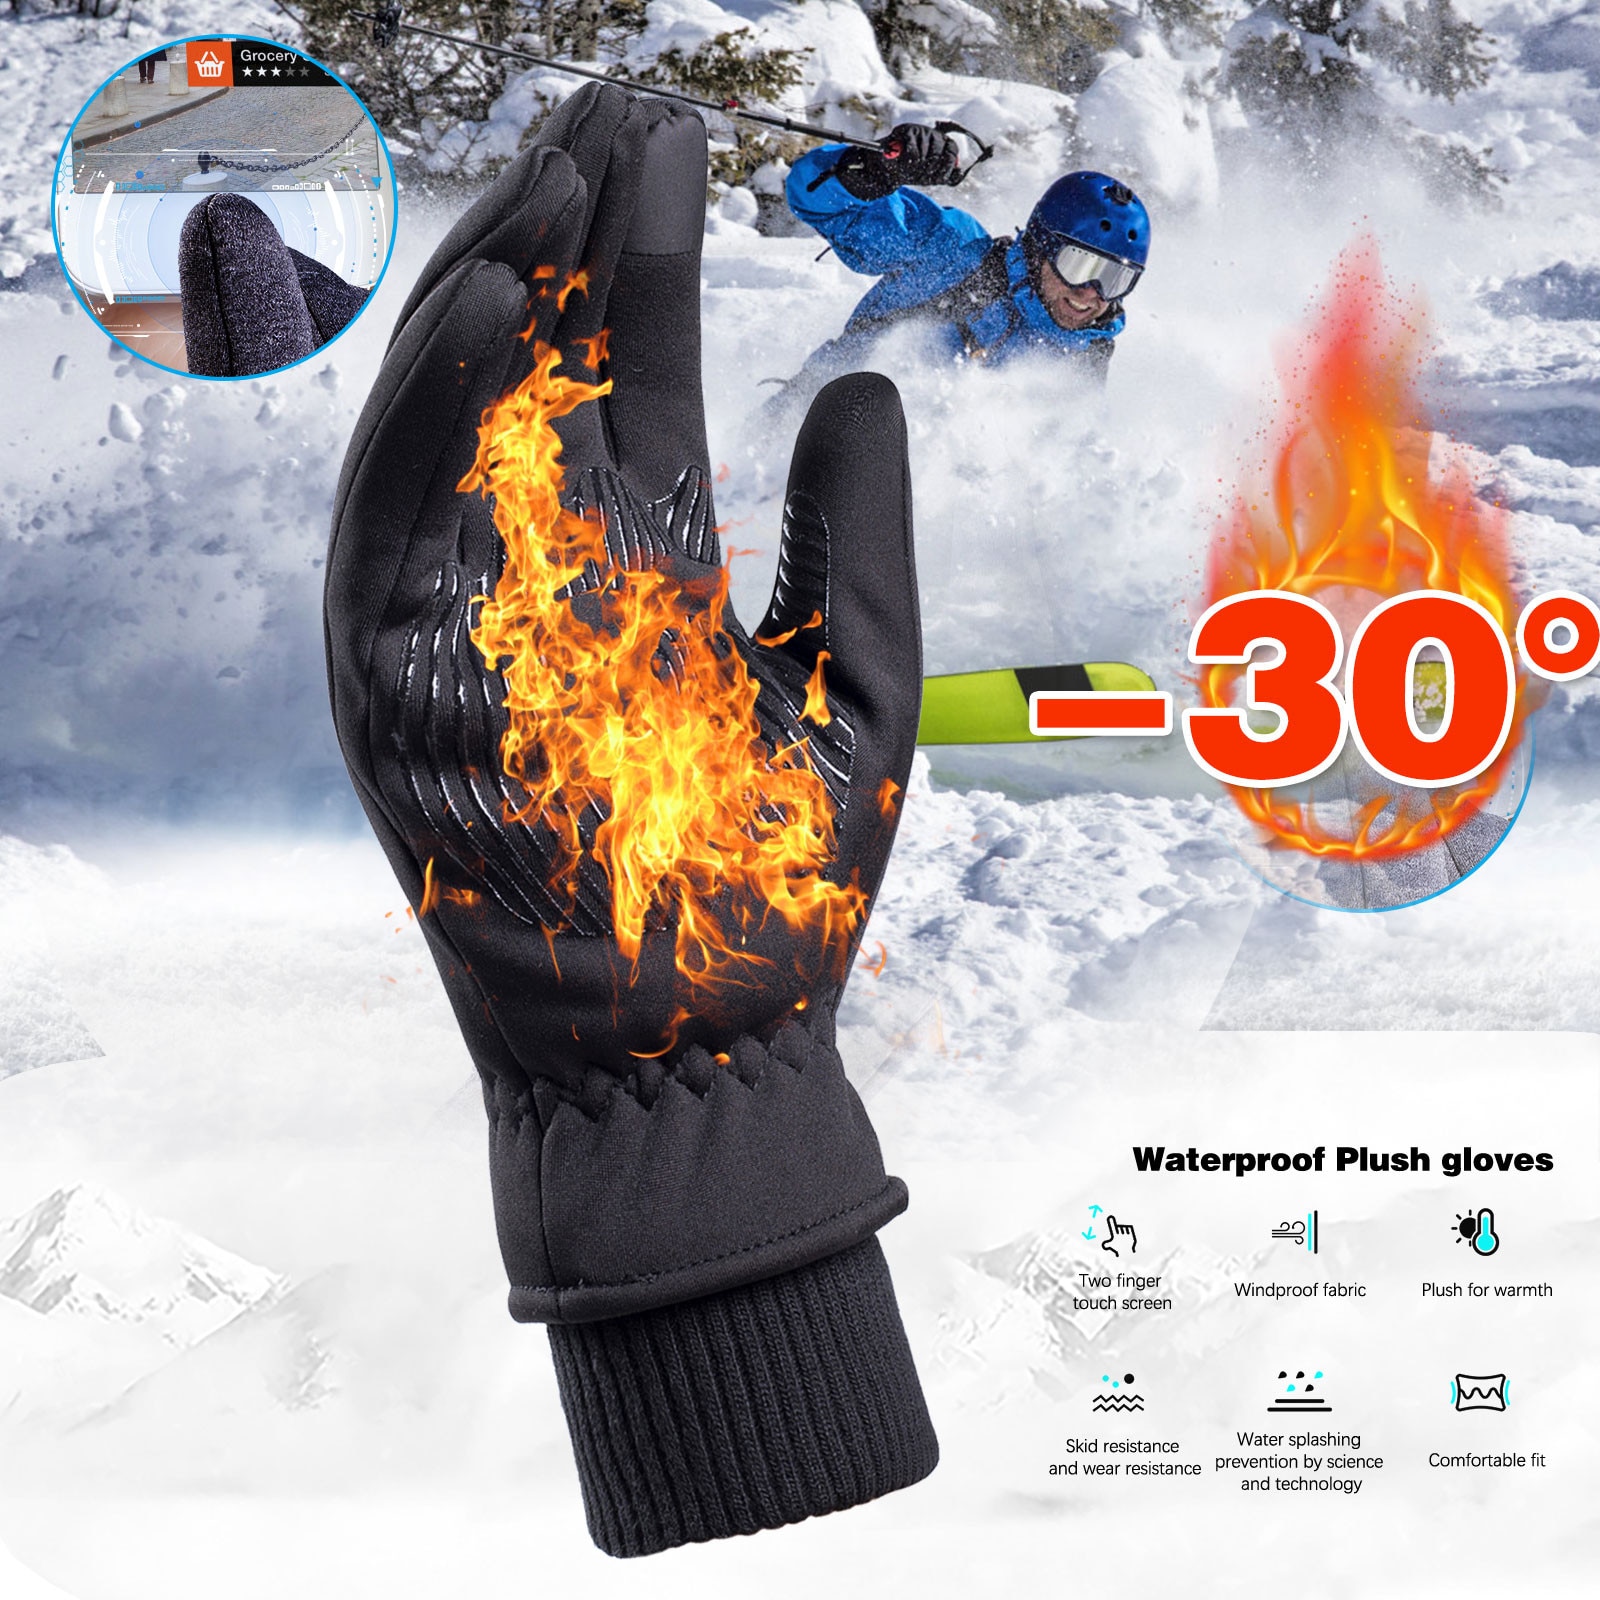 Touch Screen Winddicht Outdoor Sport Handschoenen Voor Mannen Vrouwen Warm Guantes Tacticos Luva Thicken Winter Windstopper Mannen Handschoenen